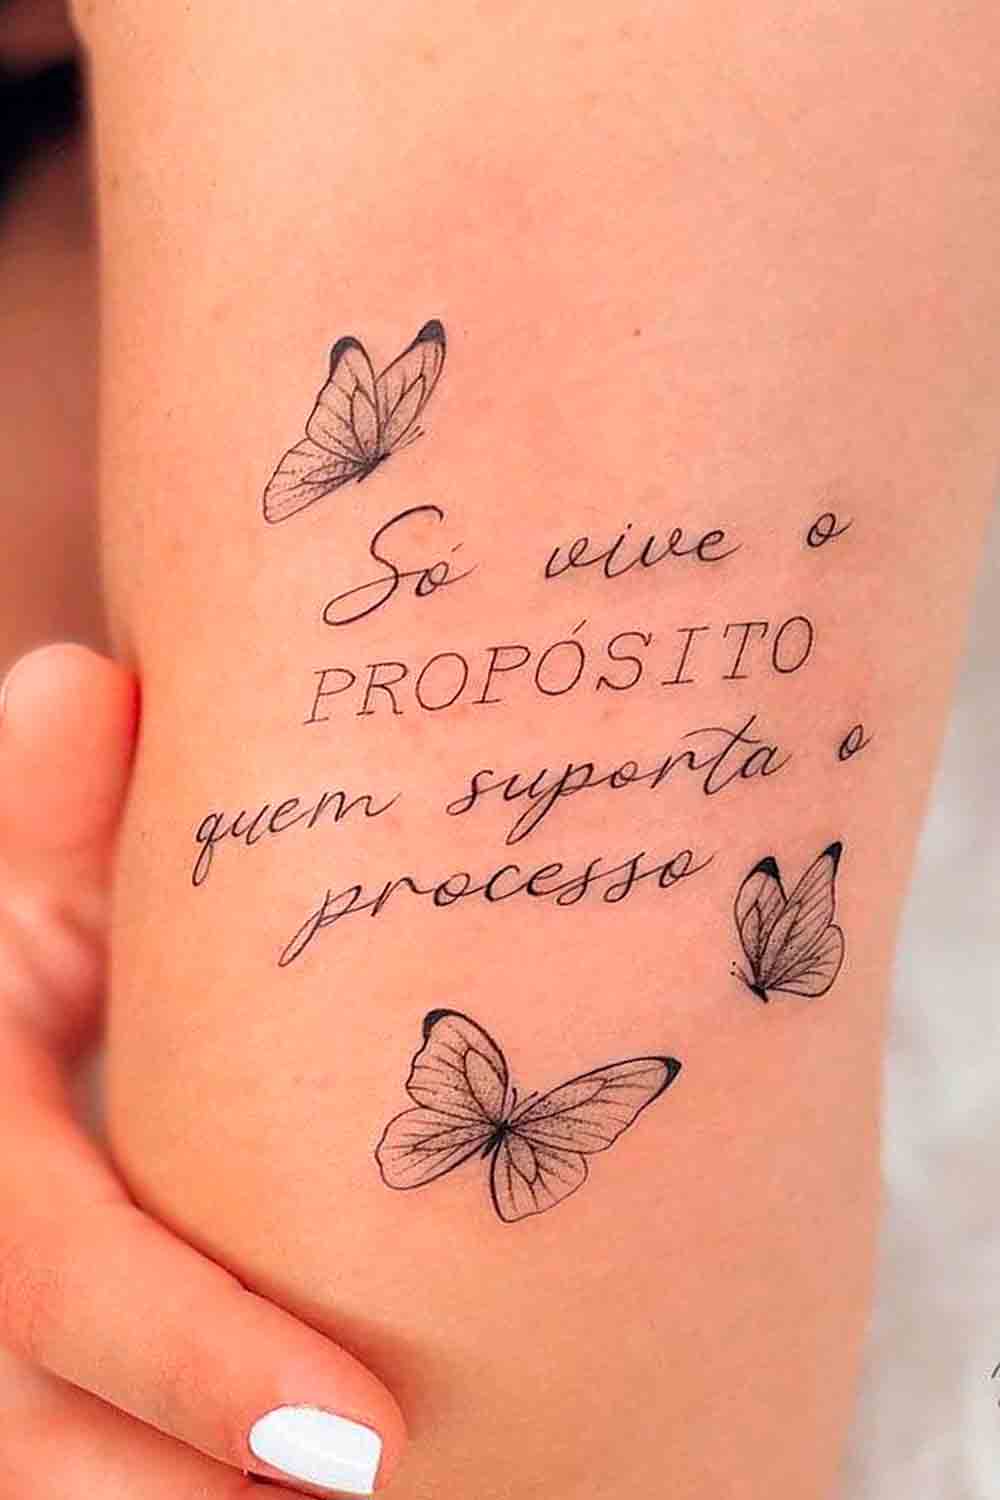 tatuagem-feminina-no-braco-so-vive-o-proposito-quem-suporta-o-processo 